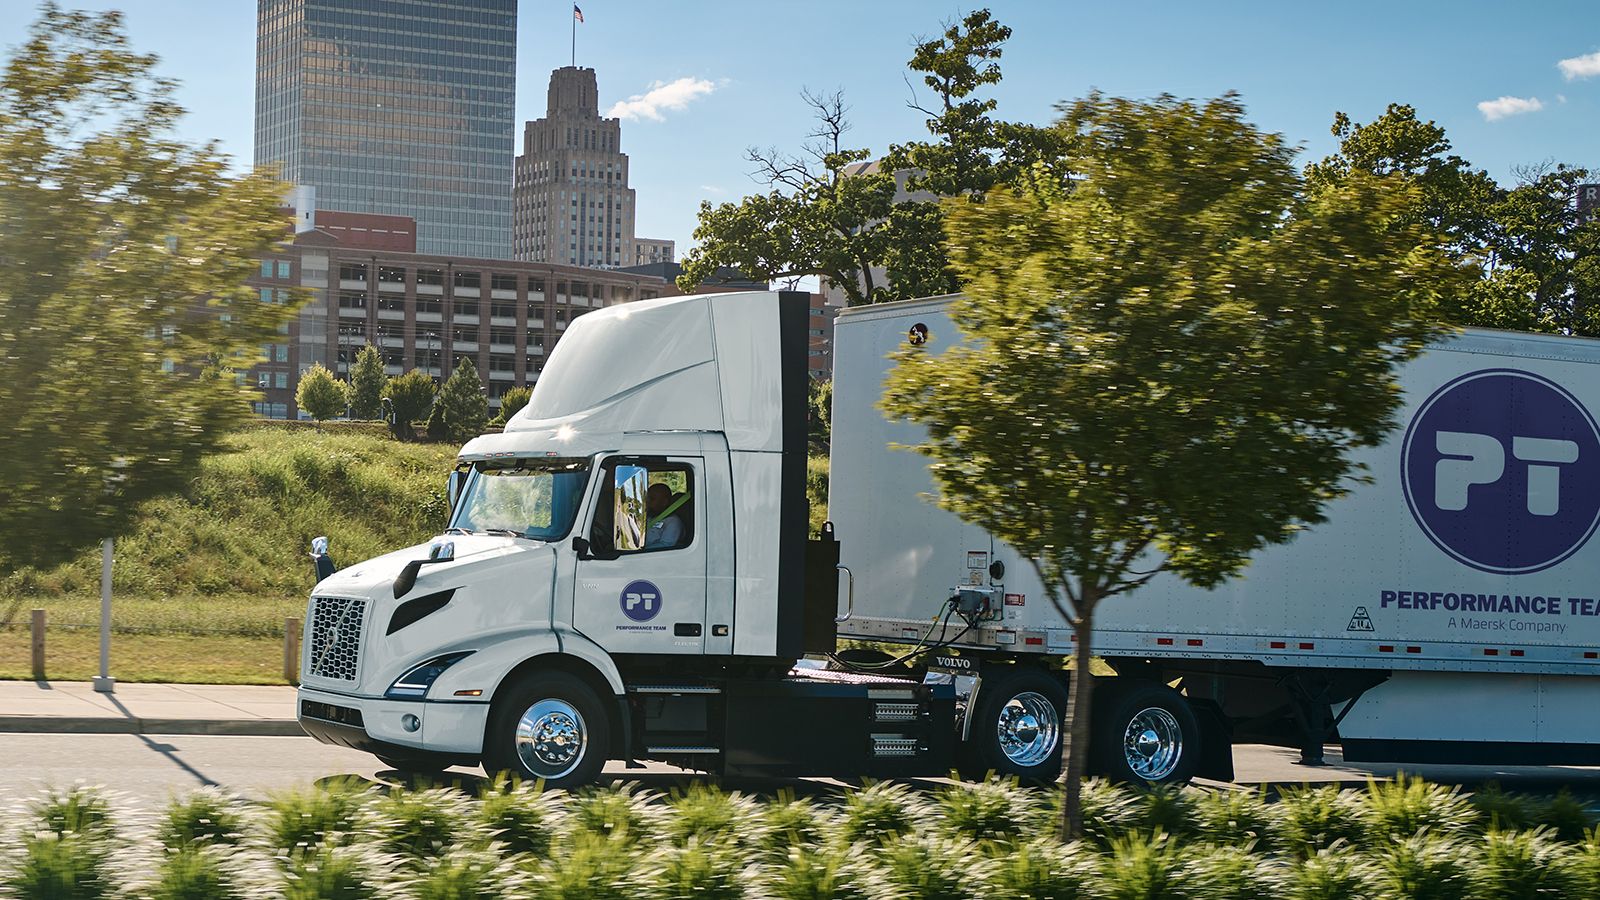 Τα ηλεκτρικά φορτηγά θα χρησιμοποιηθούν στην Καλιφόρνια σε μια ποικιλία εργασιών μεταφοράς, εξυπηρετώντας τις ανάγκες των logistics λιμένων και των δρομολογίων διανομών μεταξύ αποθηκών.